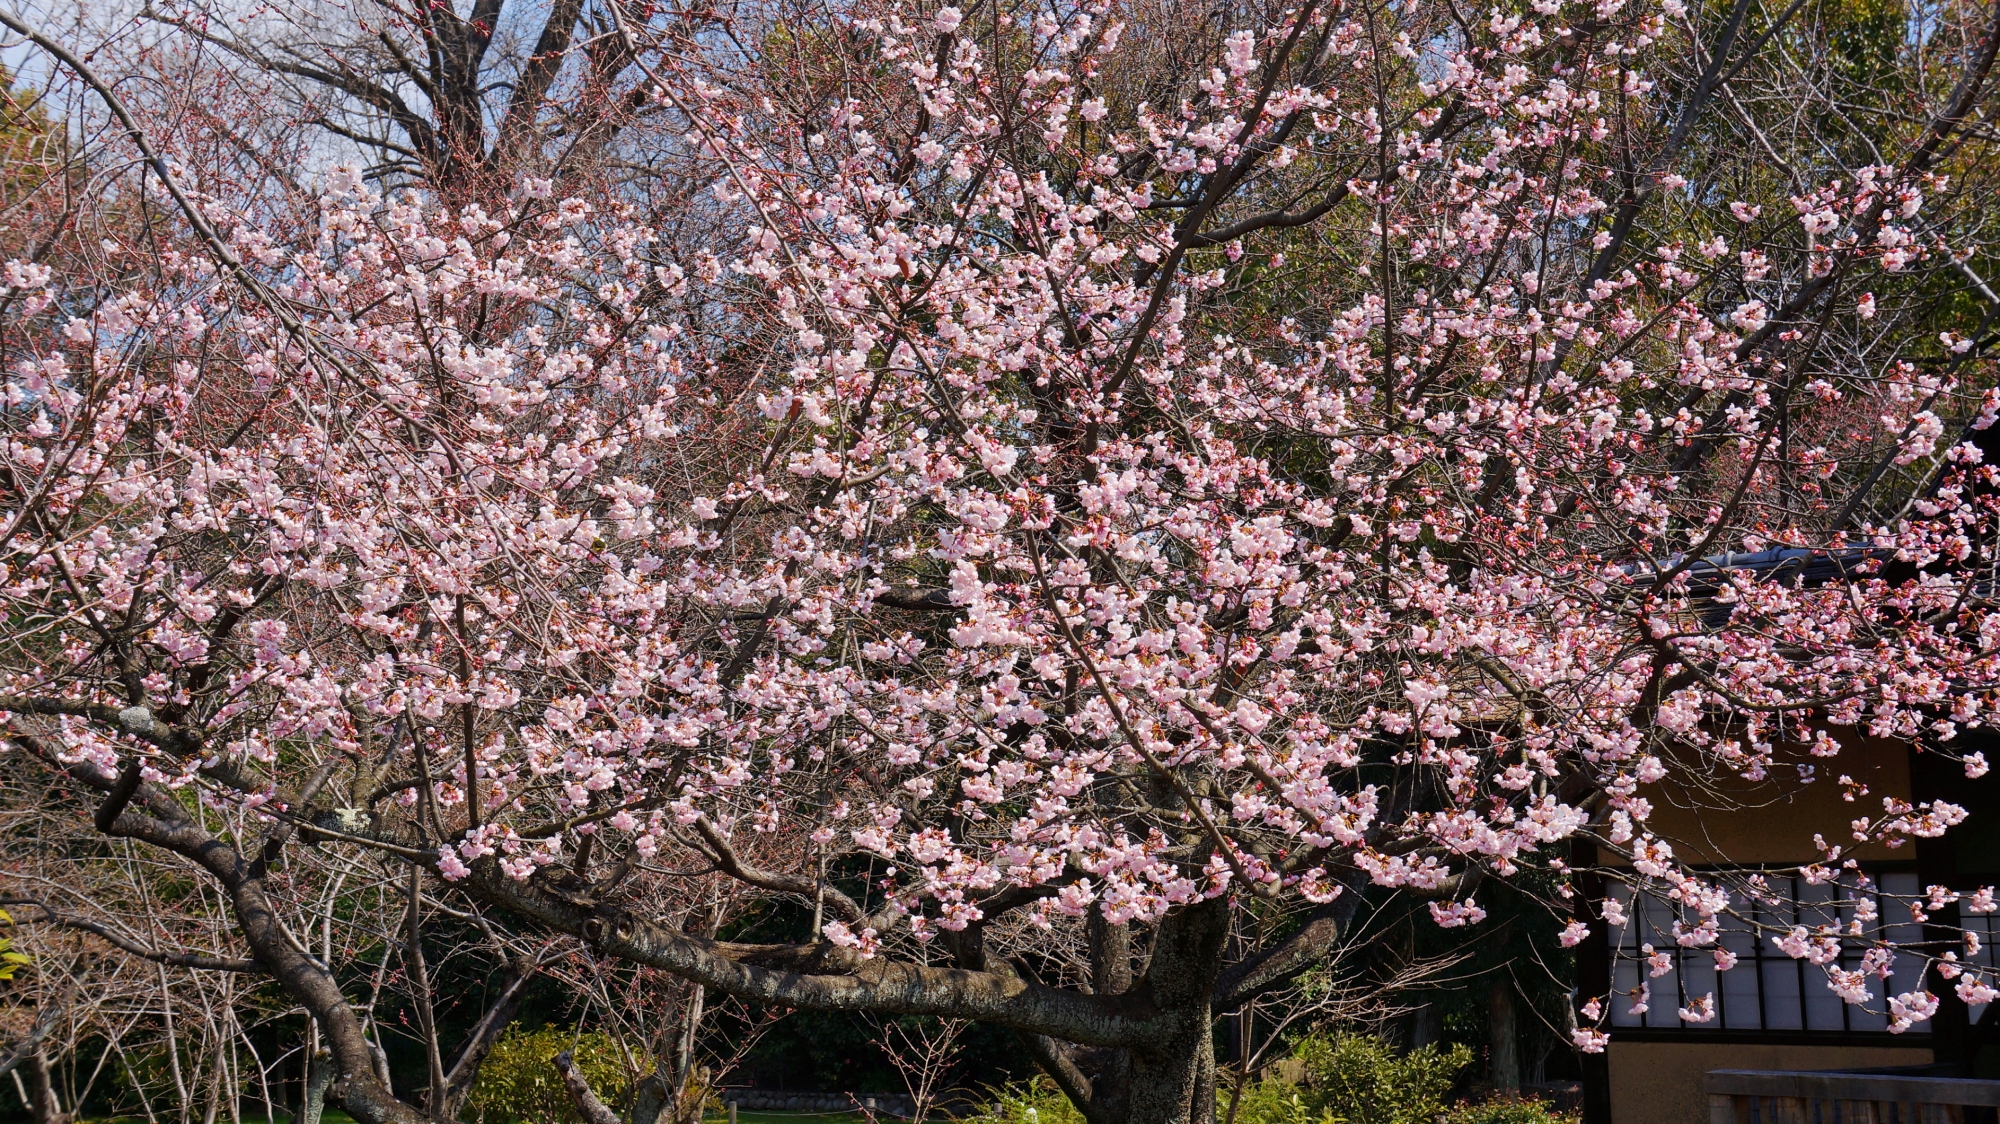 渉成園の早咲きの桜として知られる修善寺寒桜